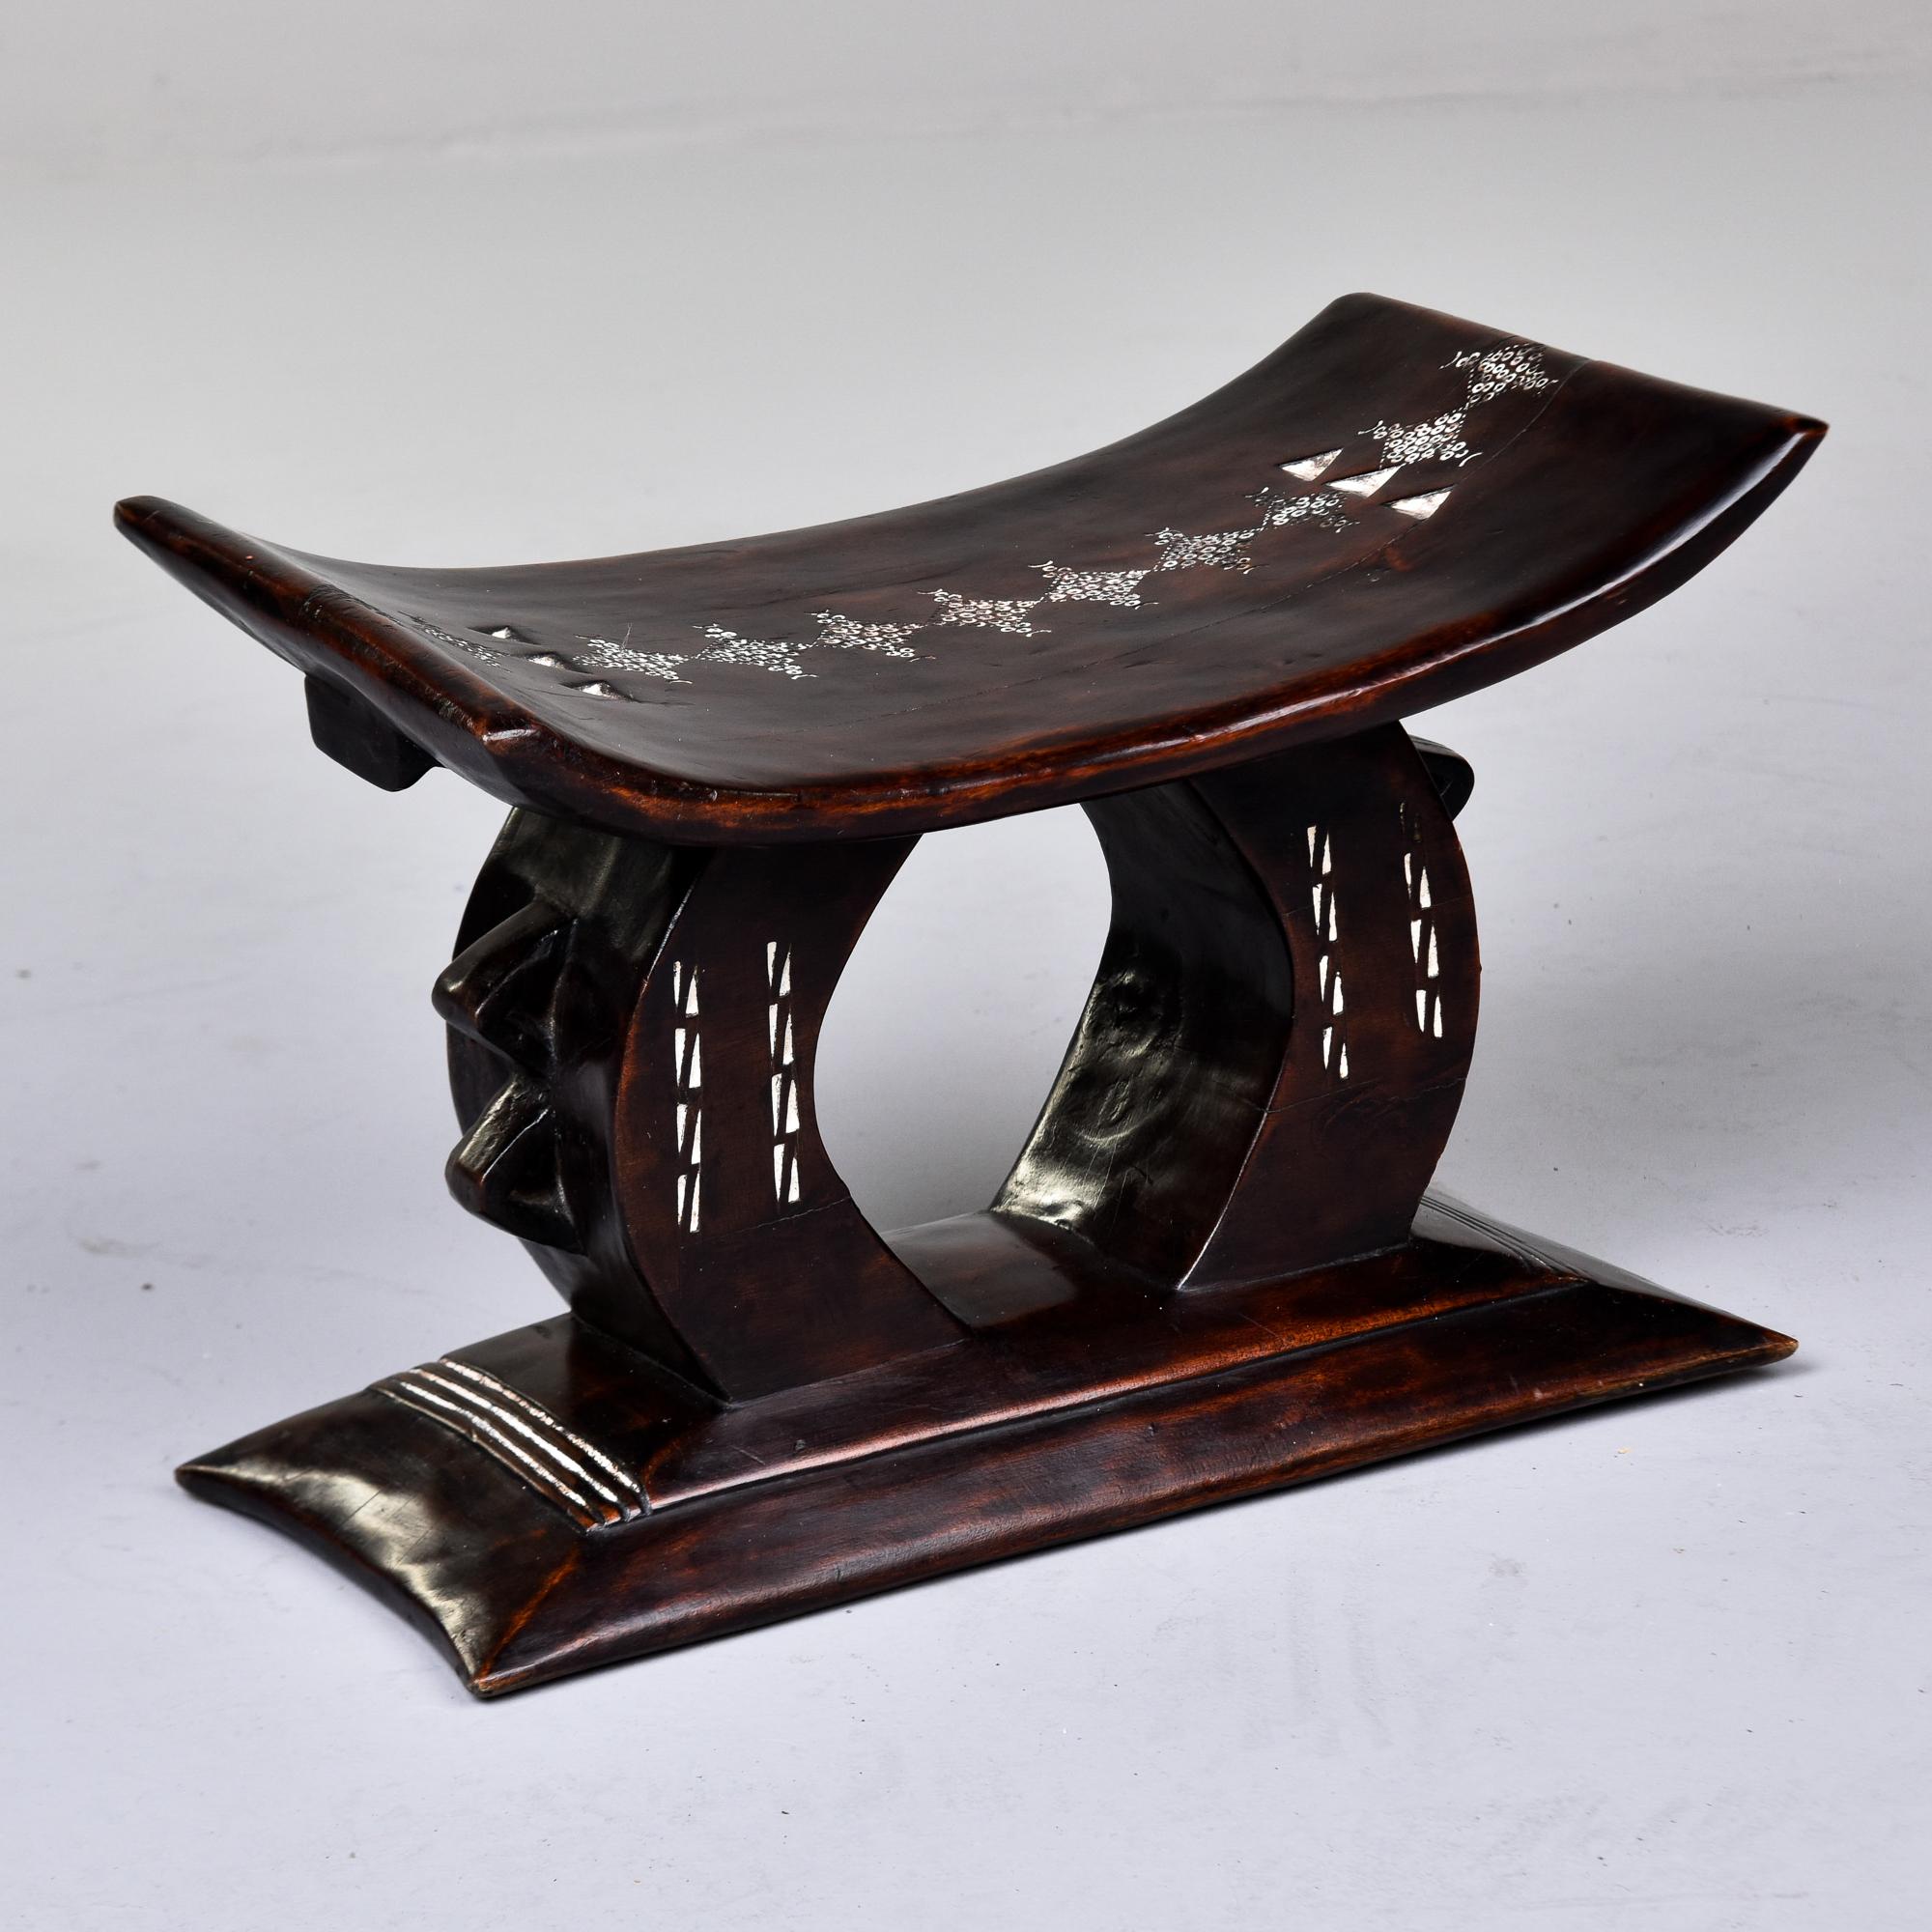 Trouvé au Ghana, ce tabouret sculpté Ashanti date des années 1980. Sculpté à la main et fabriqué à partir d'une seule pièce de bois, ce tabouret présente des motifs détaillés peints en blanc et gravés sur l'assise et la base. L'essence de bois